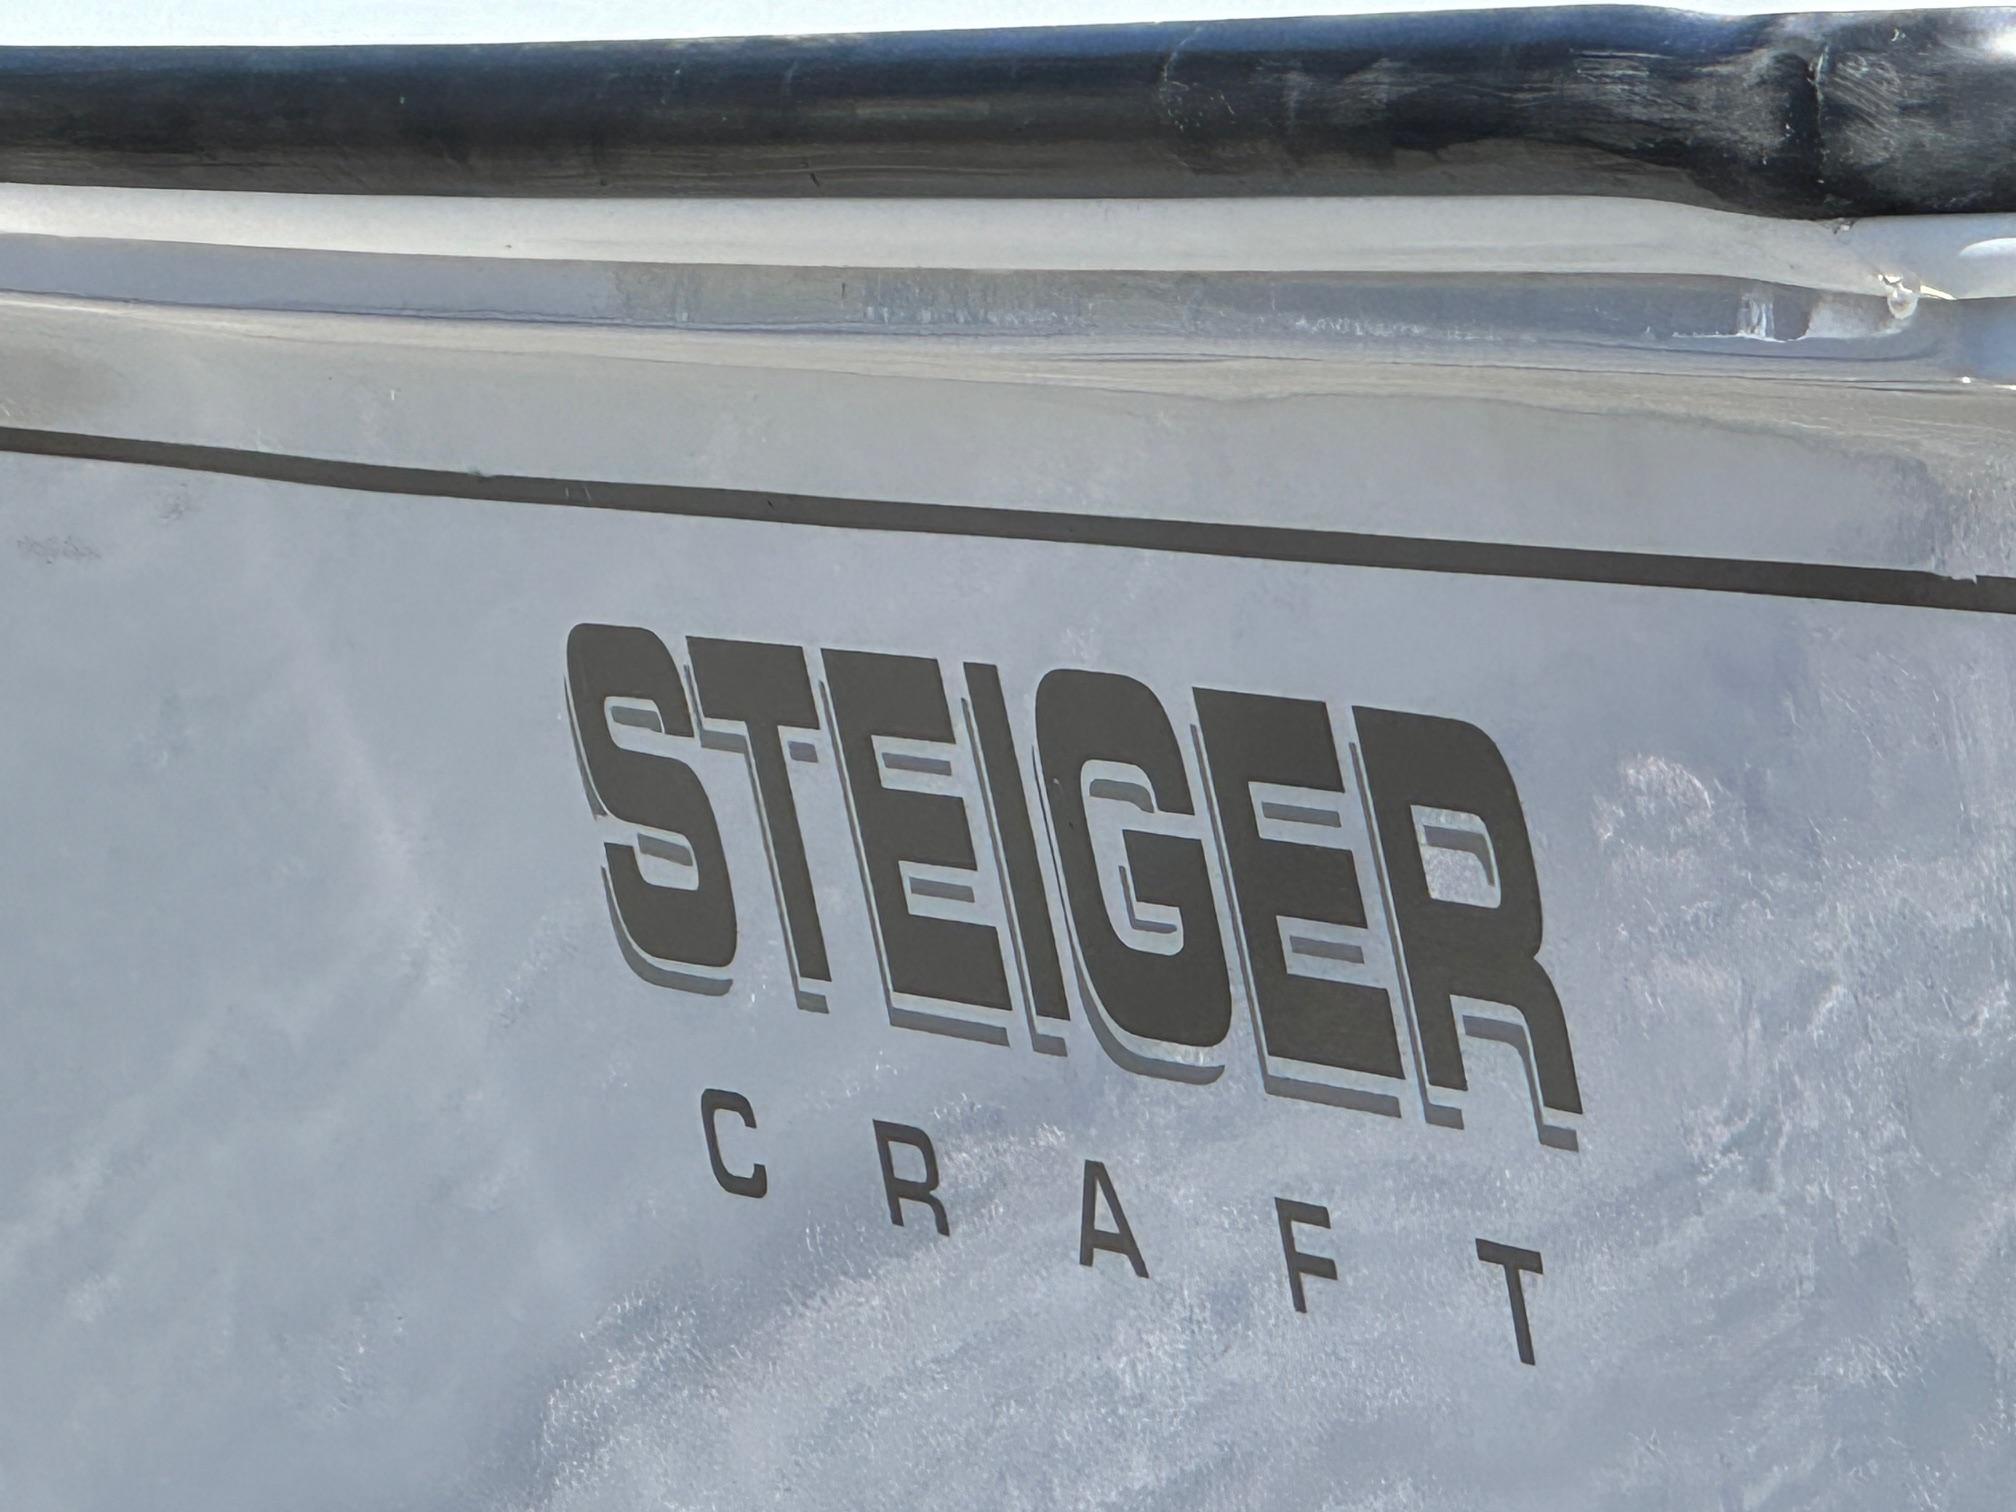 2020 Steiger Craft 25 DV Miami